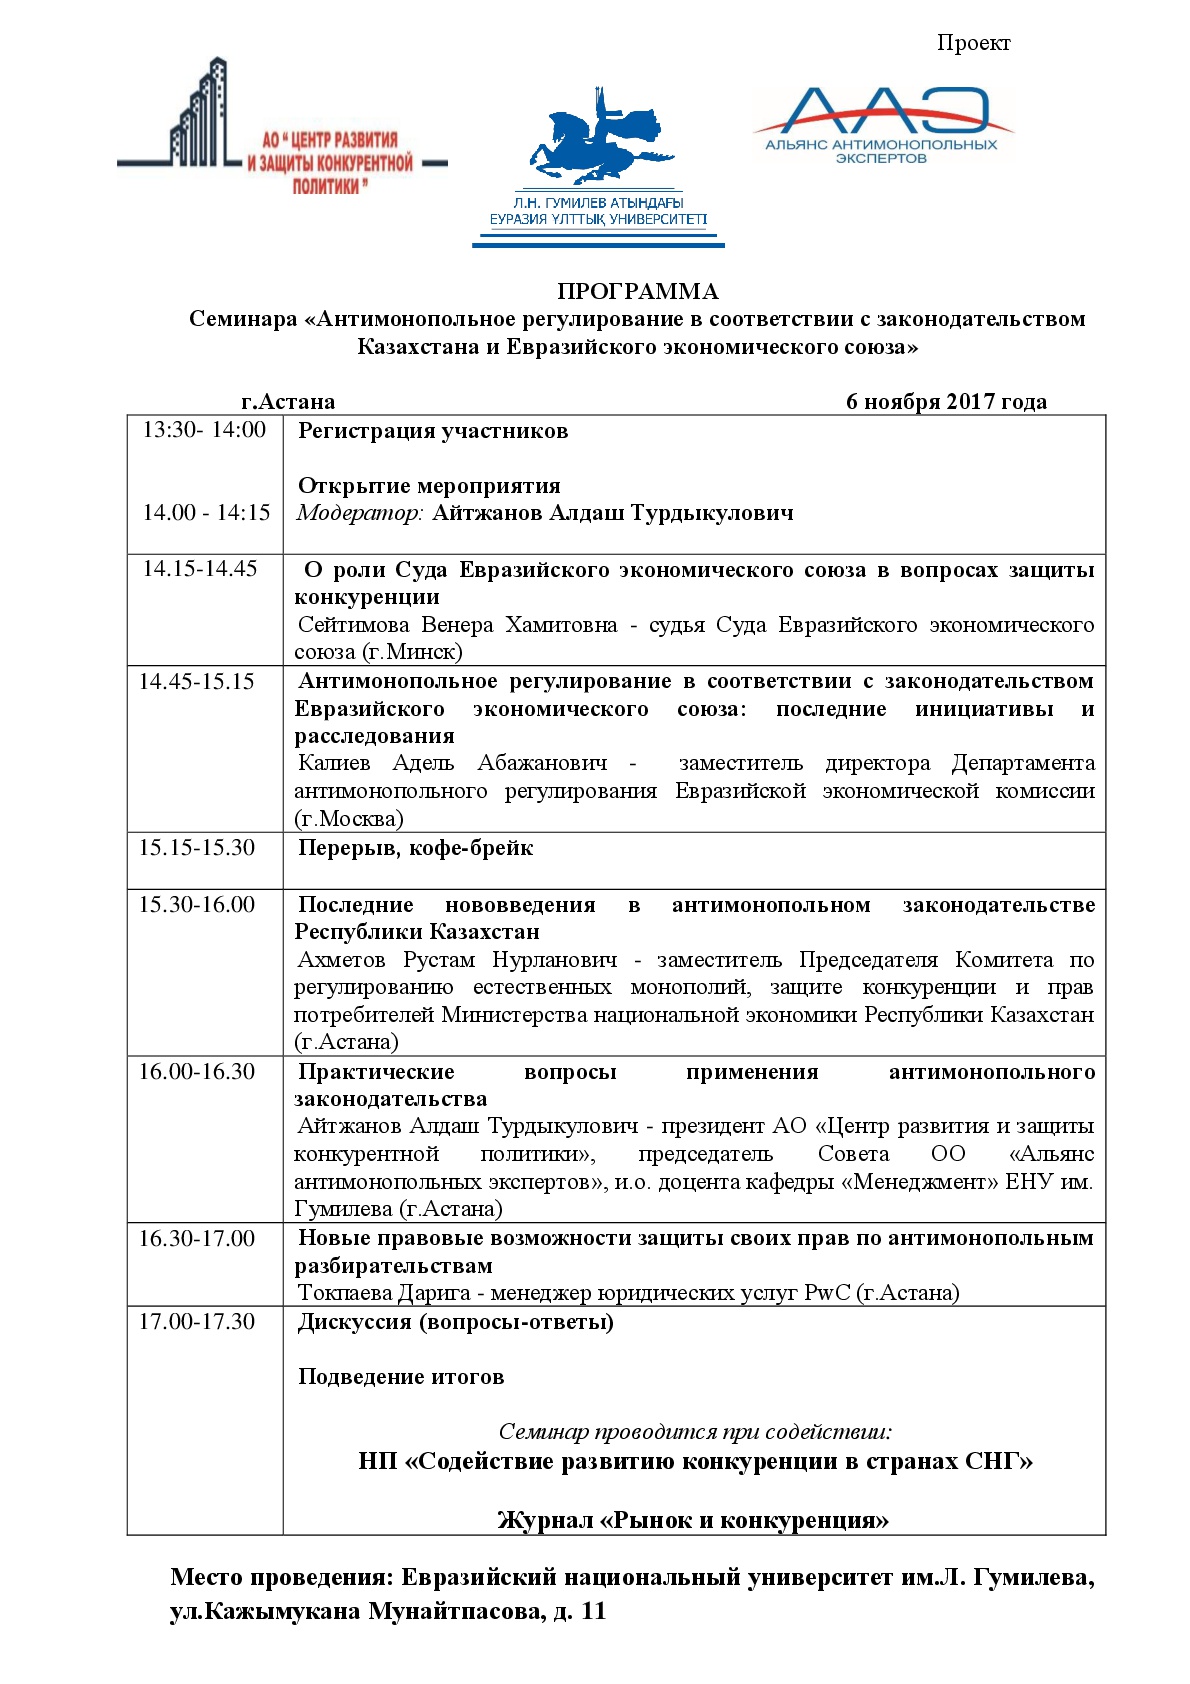 ПРОГРАММА семинара на тему: «Антимонопольное регулирование в соответствии с законодательством Казахстана и Евразийского экономического союза» 6 ноября 2017 года, г.Астана